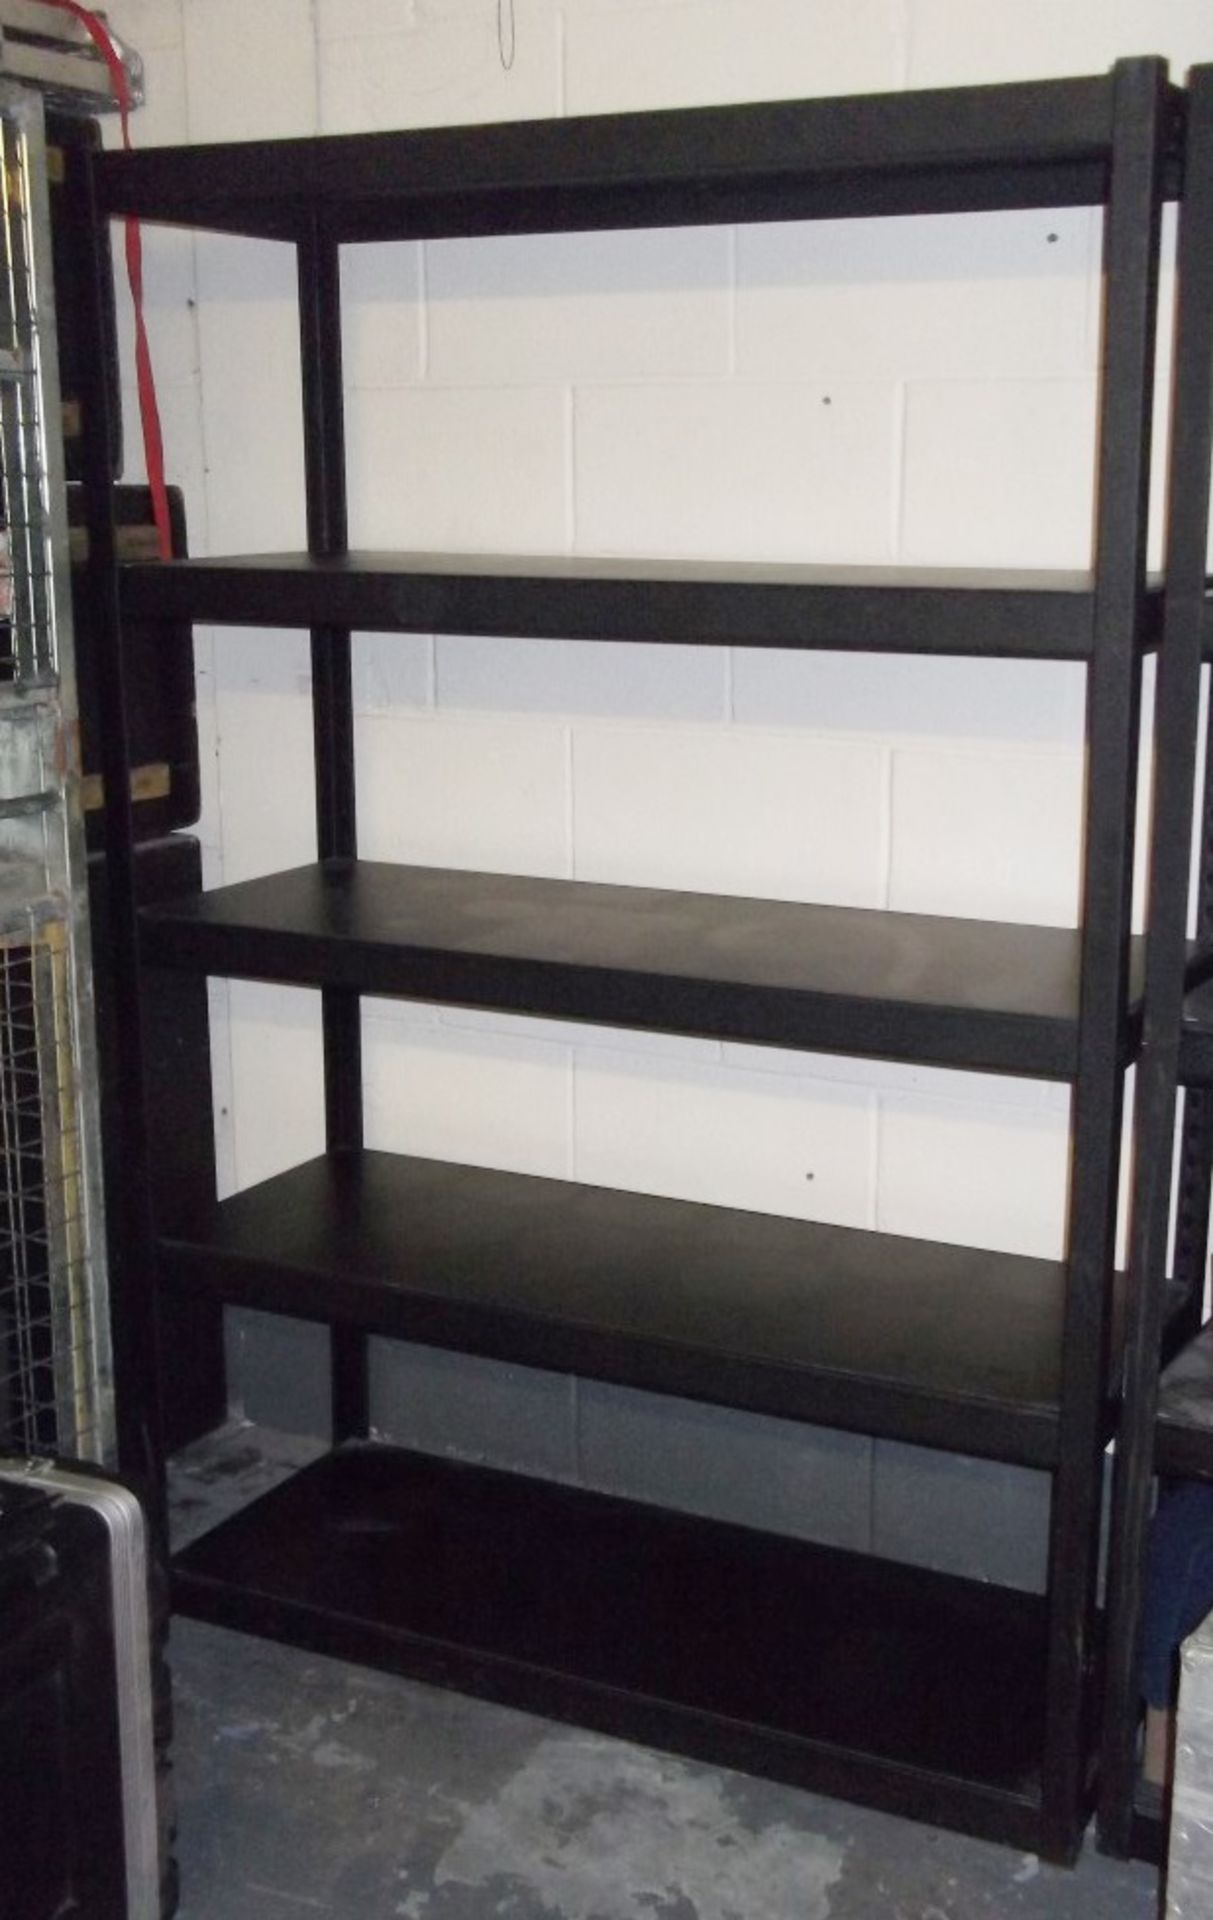 1 x Metal Shelving Unit - Black - Dimensions: H182 x D45 x W122cm - Ideal For Garage / Workshop -